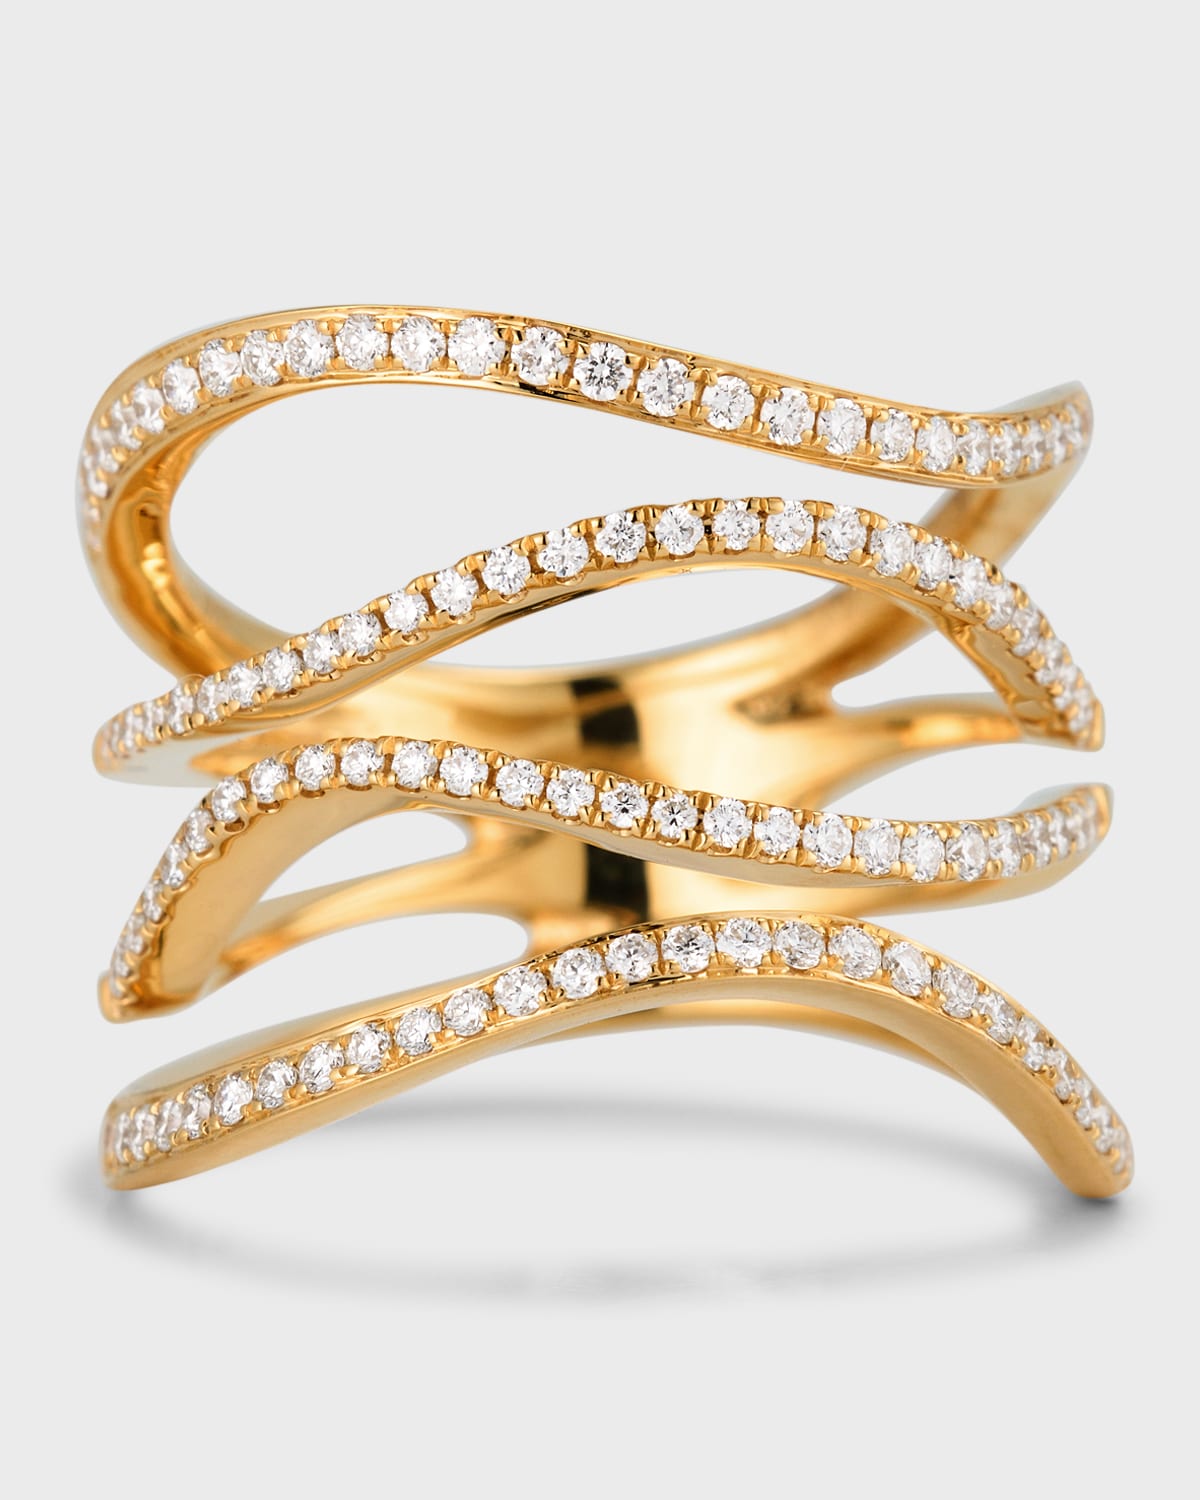 18K Yellow Gold Four Row Wavy Diamond Ring, Size 6